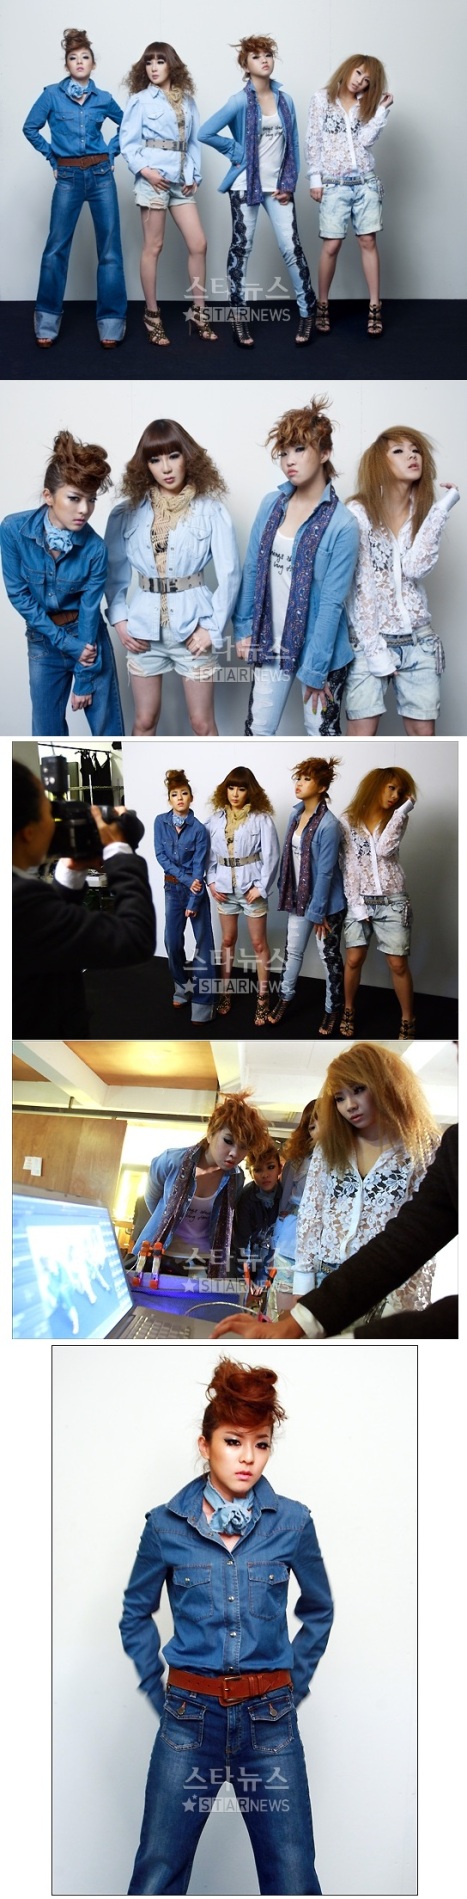 2NE1 for ‘2010 Big Project – Girlgroups dress as guys' 2ne1